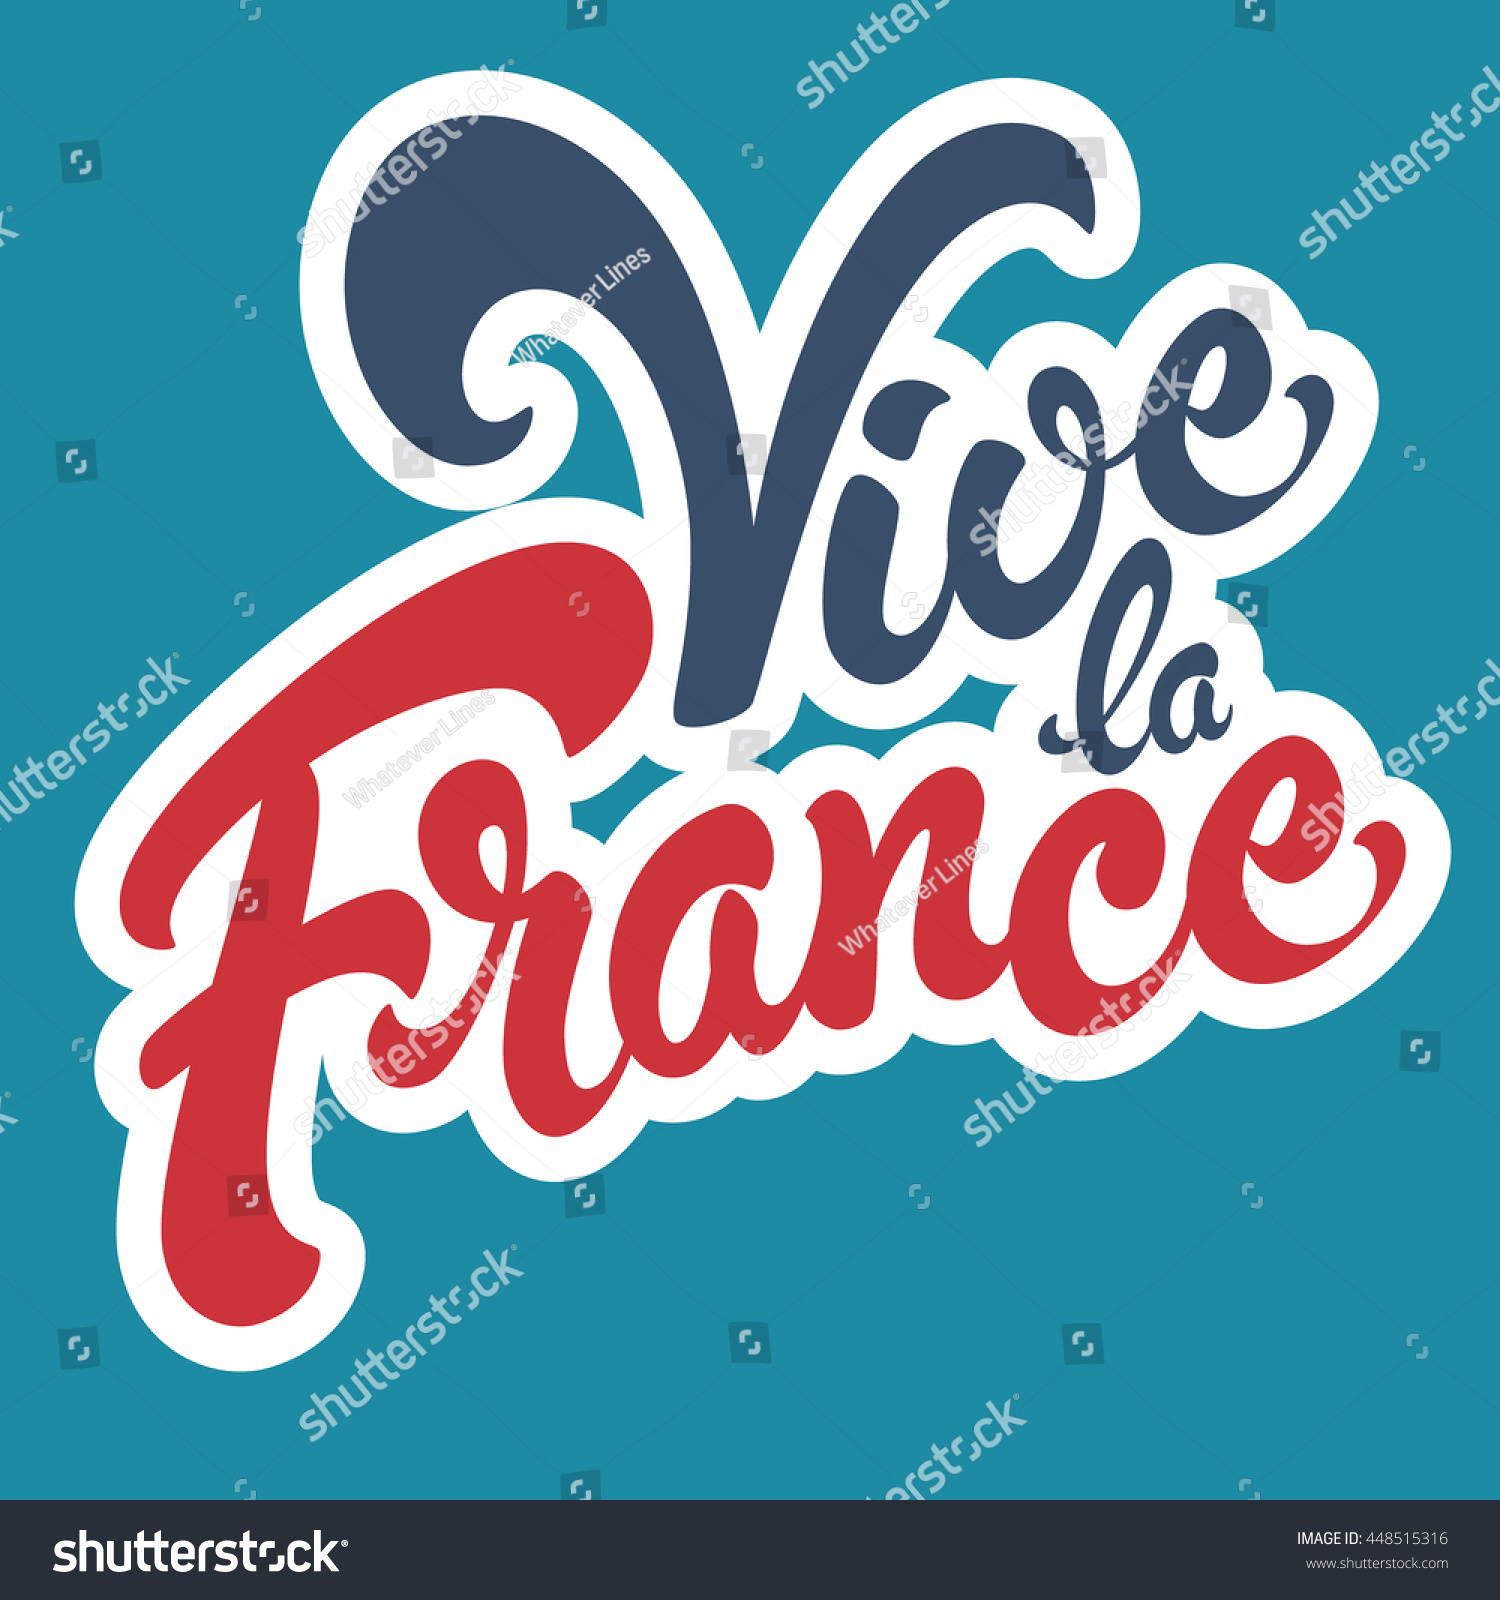 July 14 - 14 Images Celebrating Frances Bastille Day 